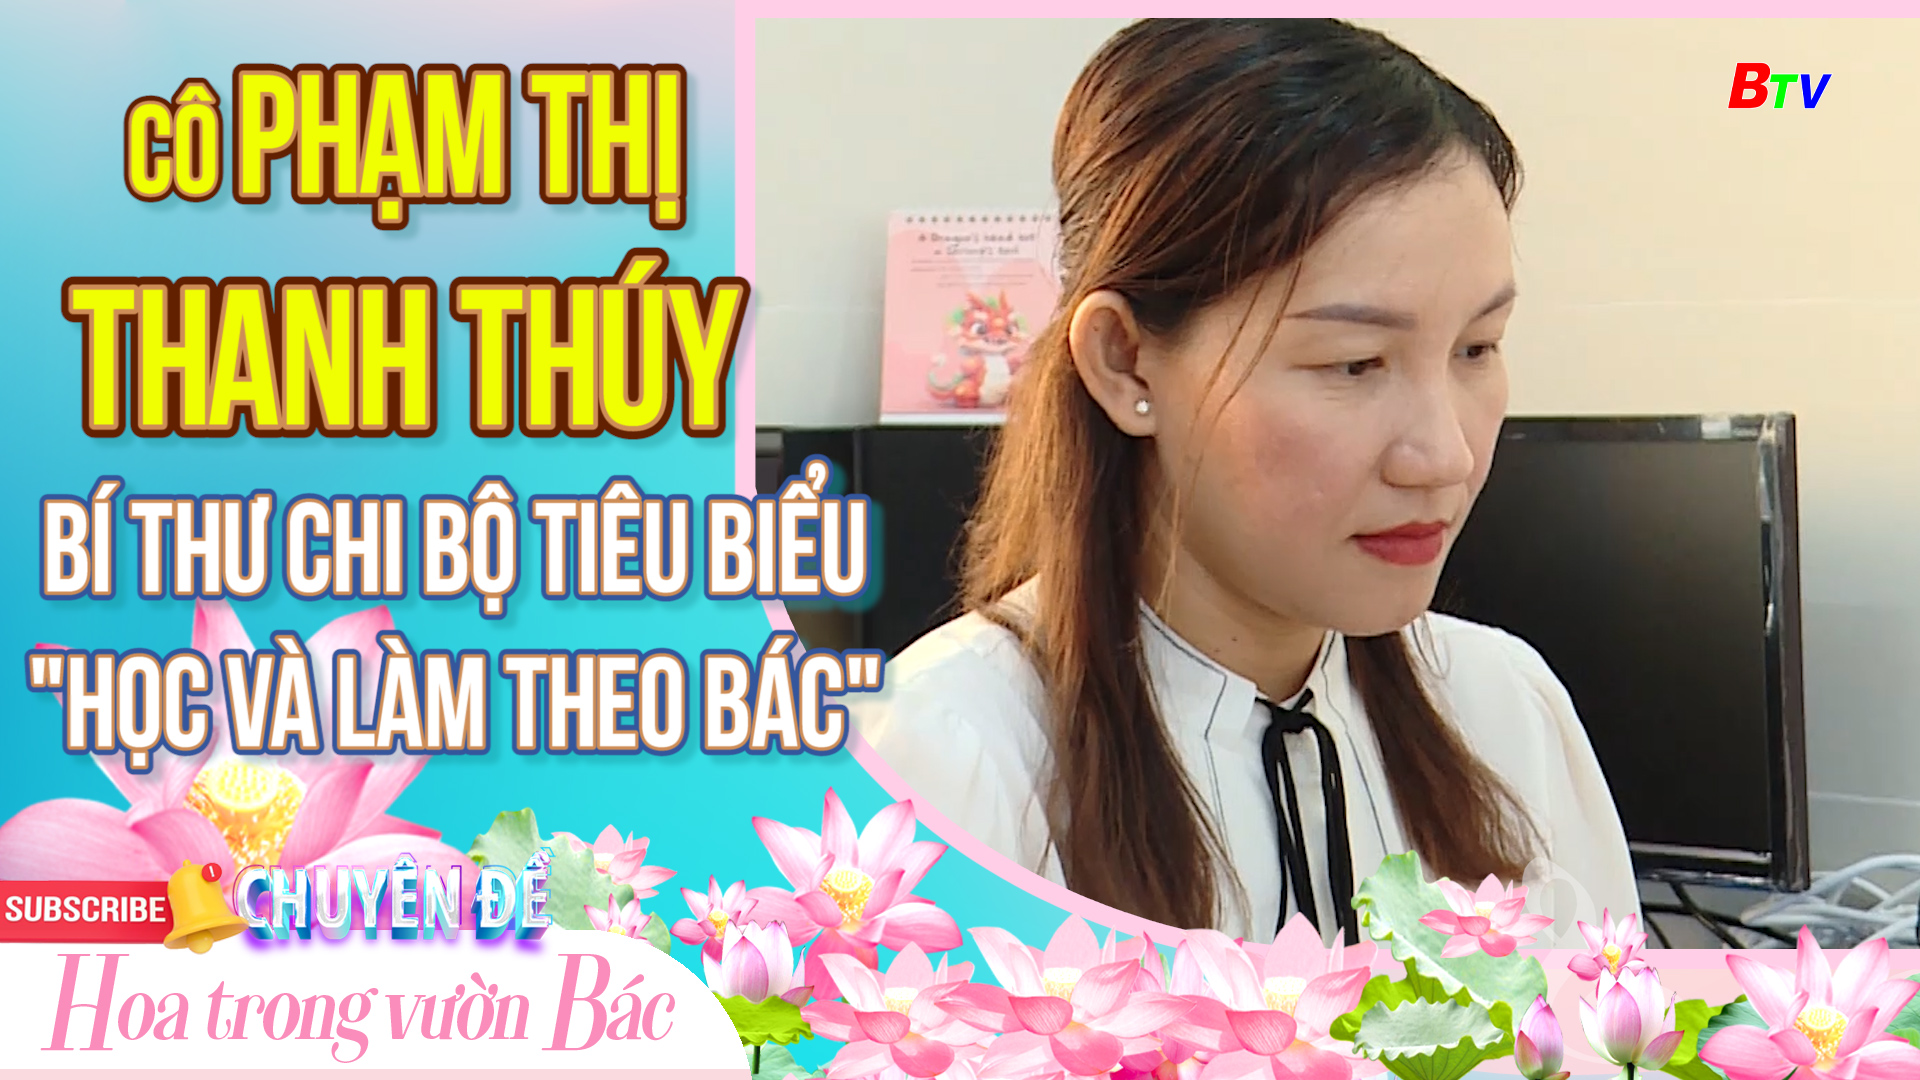 Cô Phạm Thị Thanh Thúy - Bí thư chi bộ tiêu biểu 